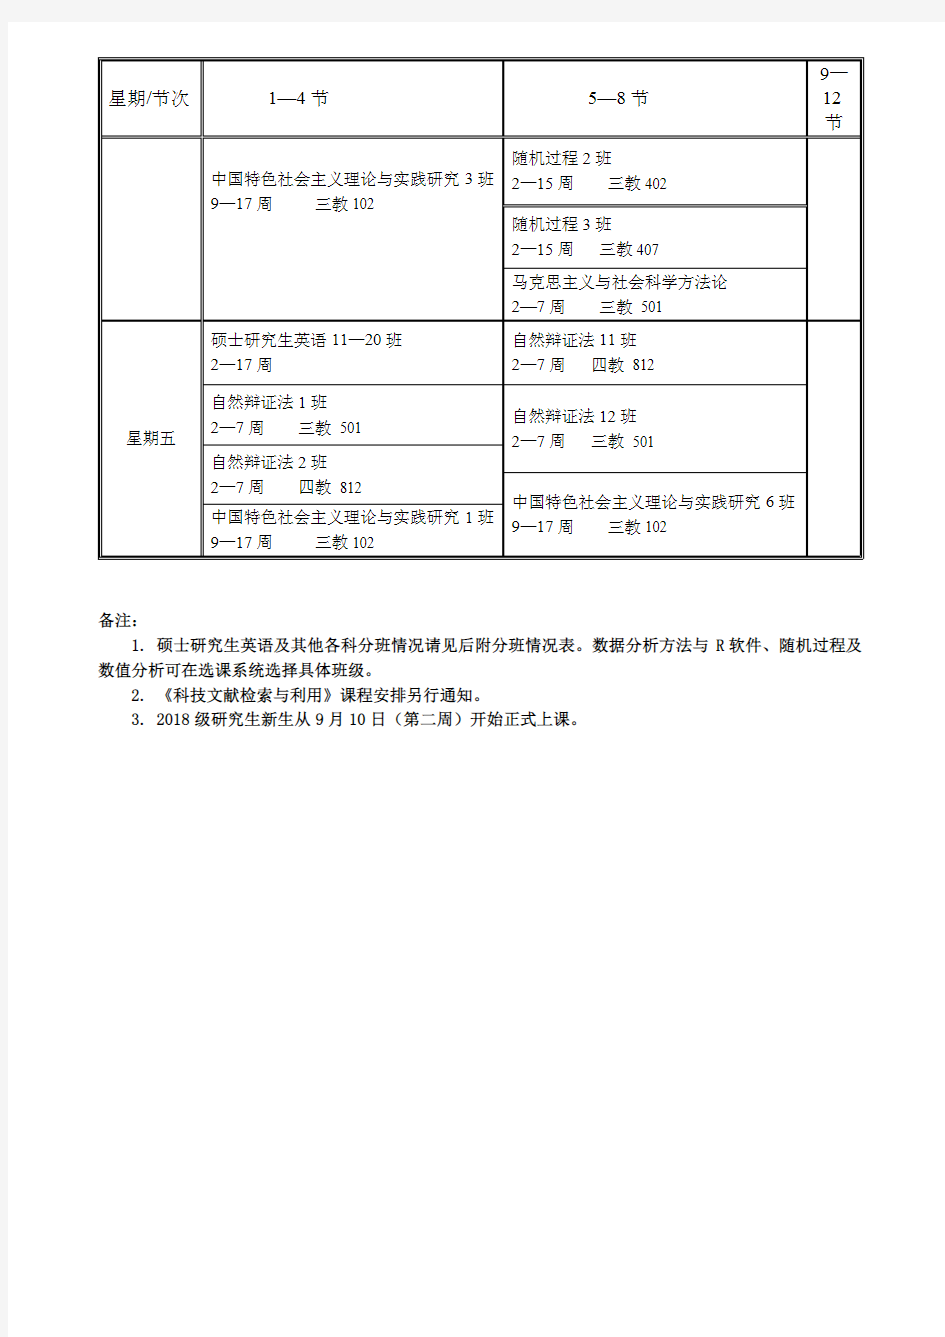 北京工业大学全日制硕士研究生公共课课程安排